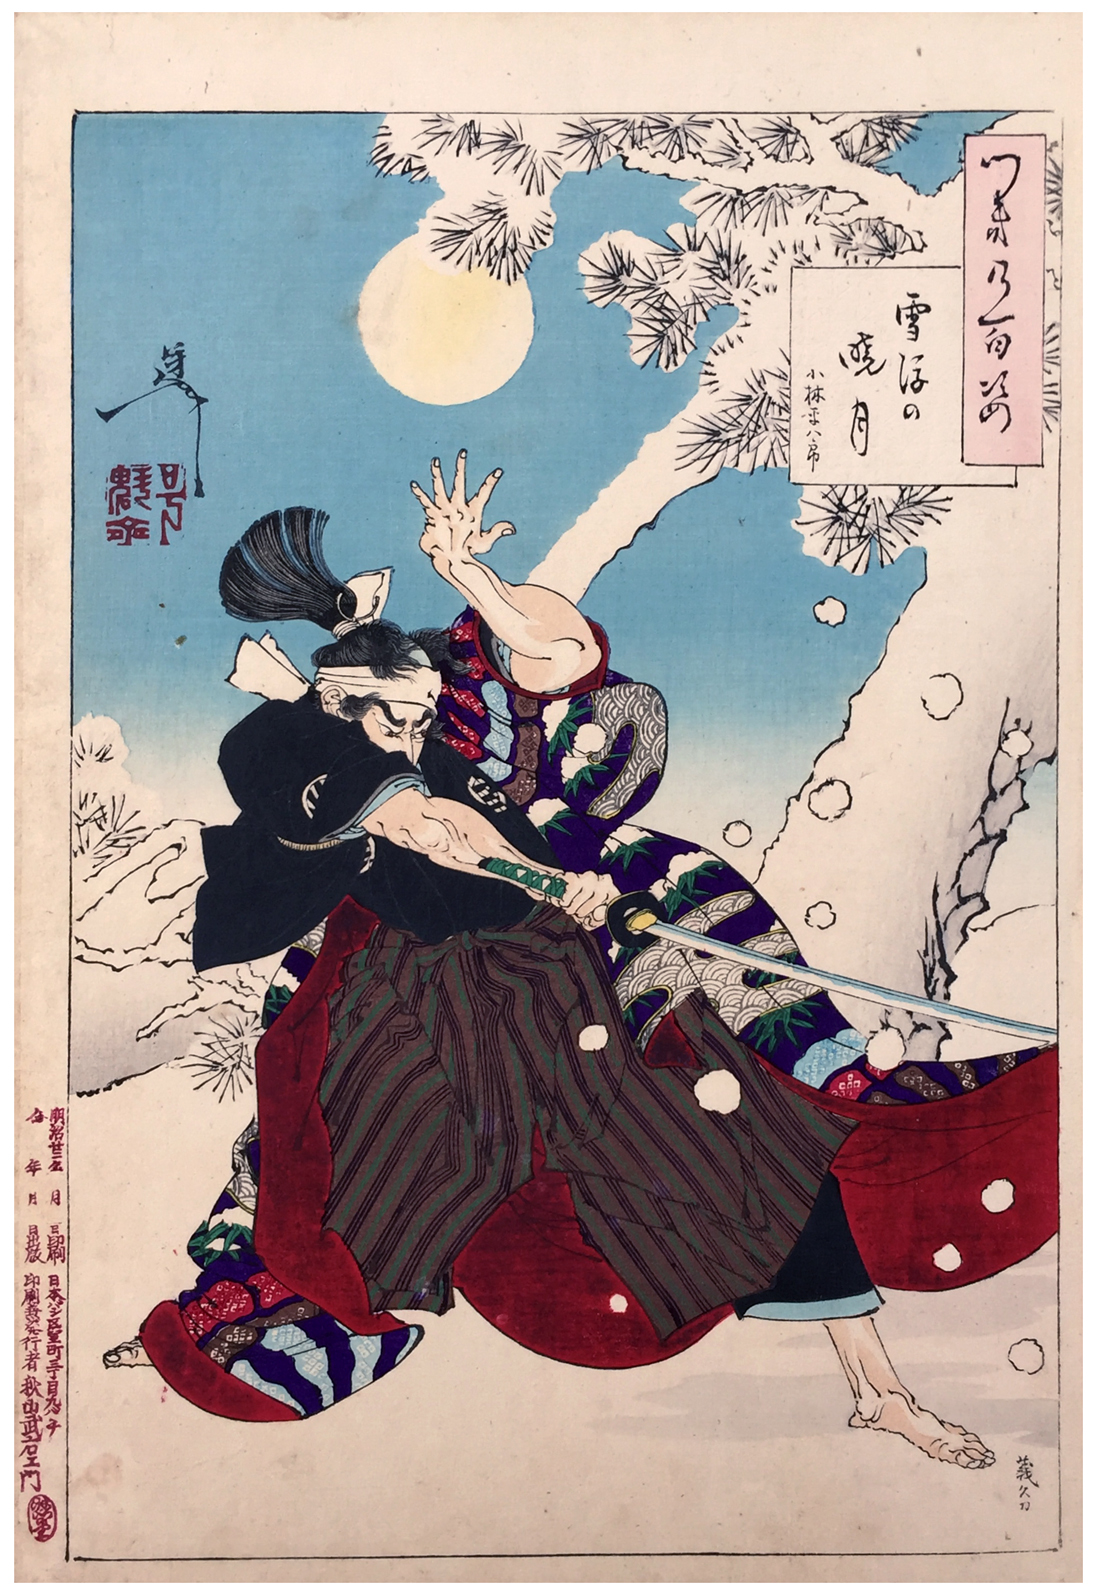 Seppu no Gyogetsu (Aurore et chute de neige) by Tsukioka Yoshitoshi - 1889 collection privée